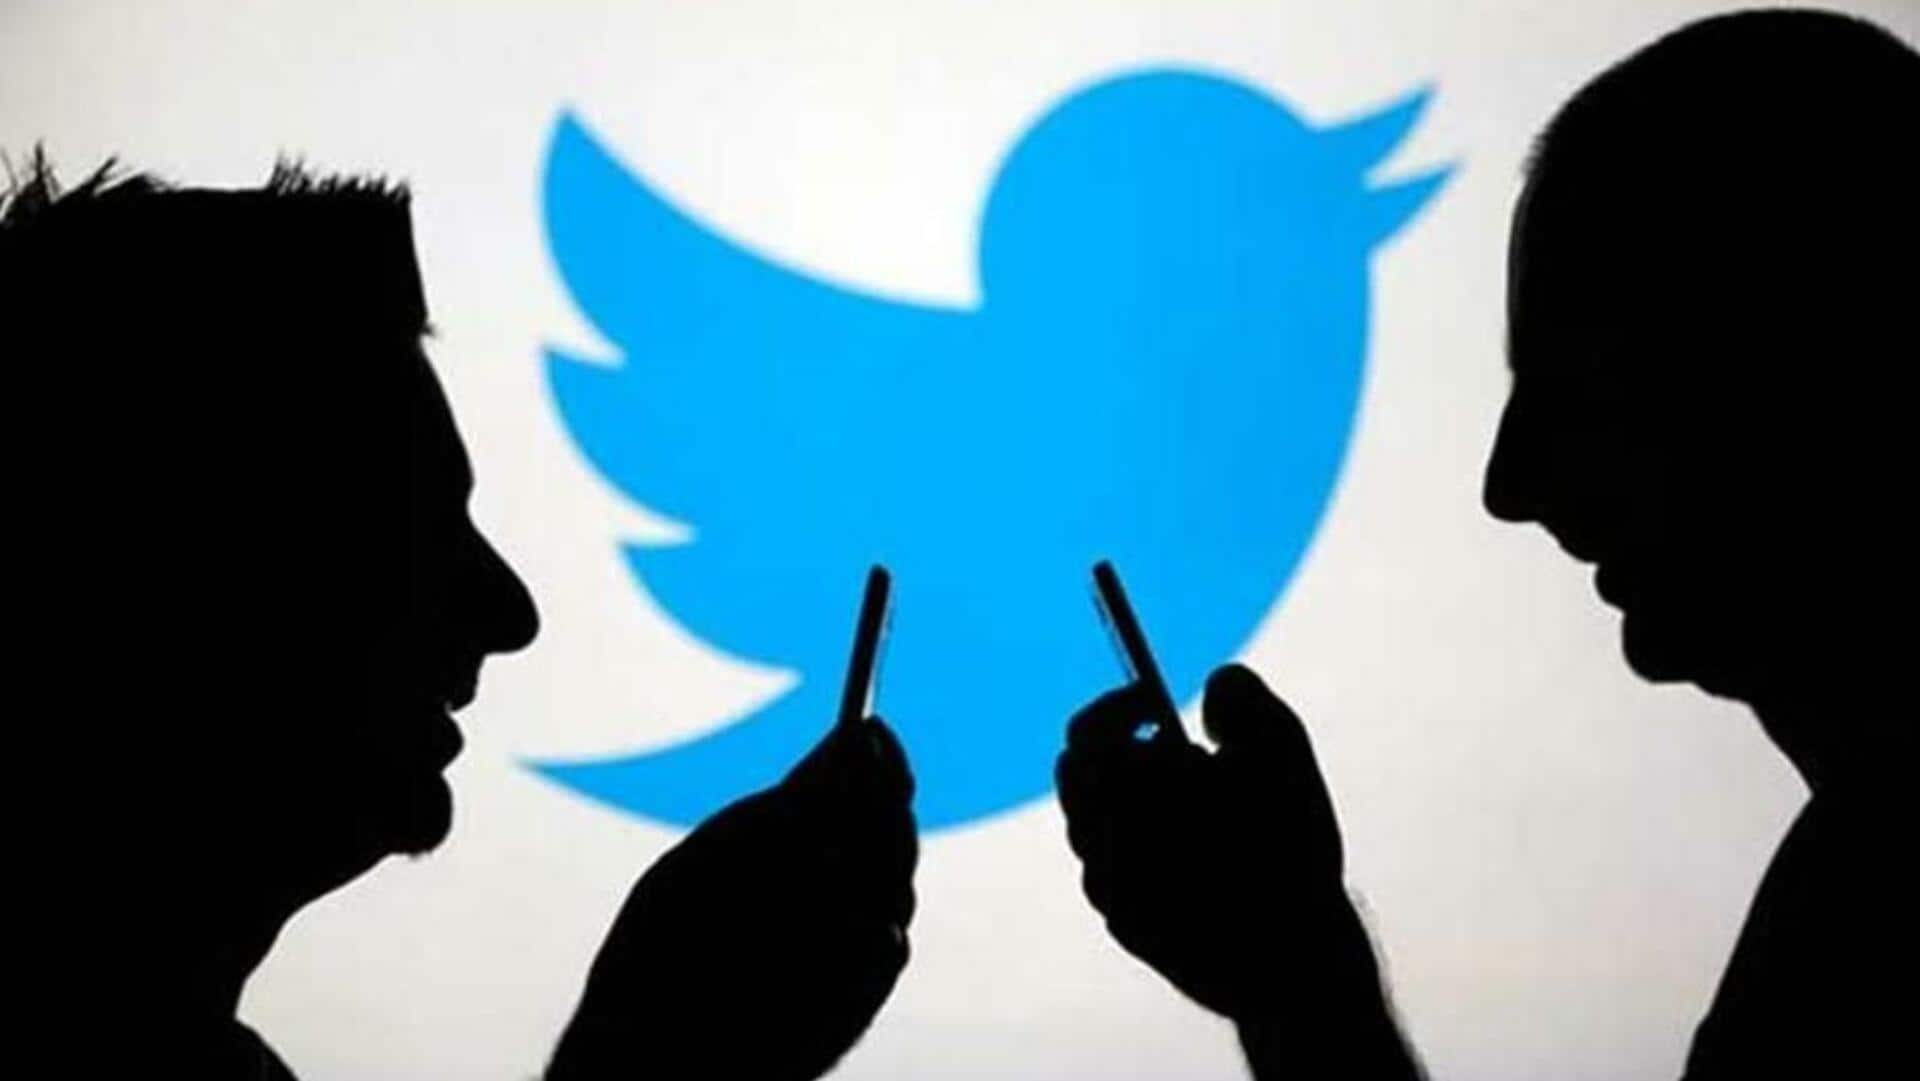 ट्विटर ने एक महीने के अंदर भारत में 6 लाख से अधिक अकाउंट्स पर लगाया प्रतिबंध